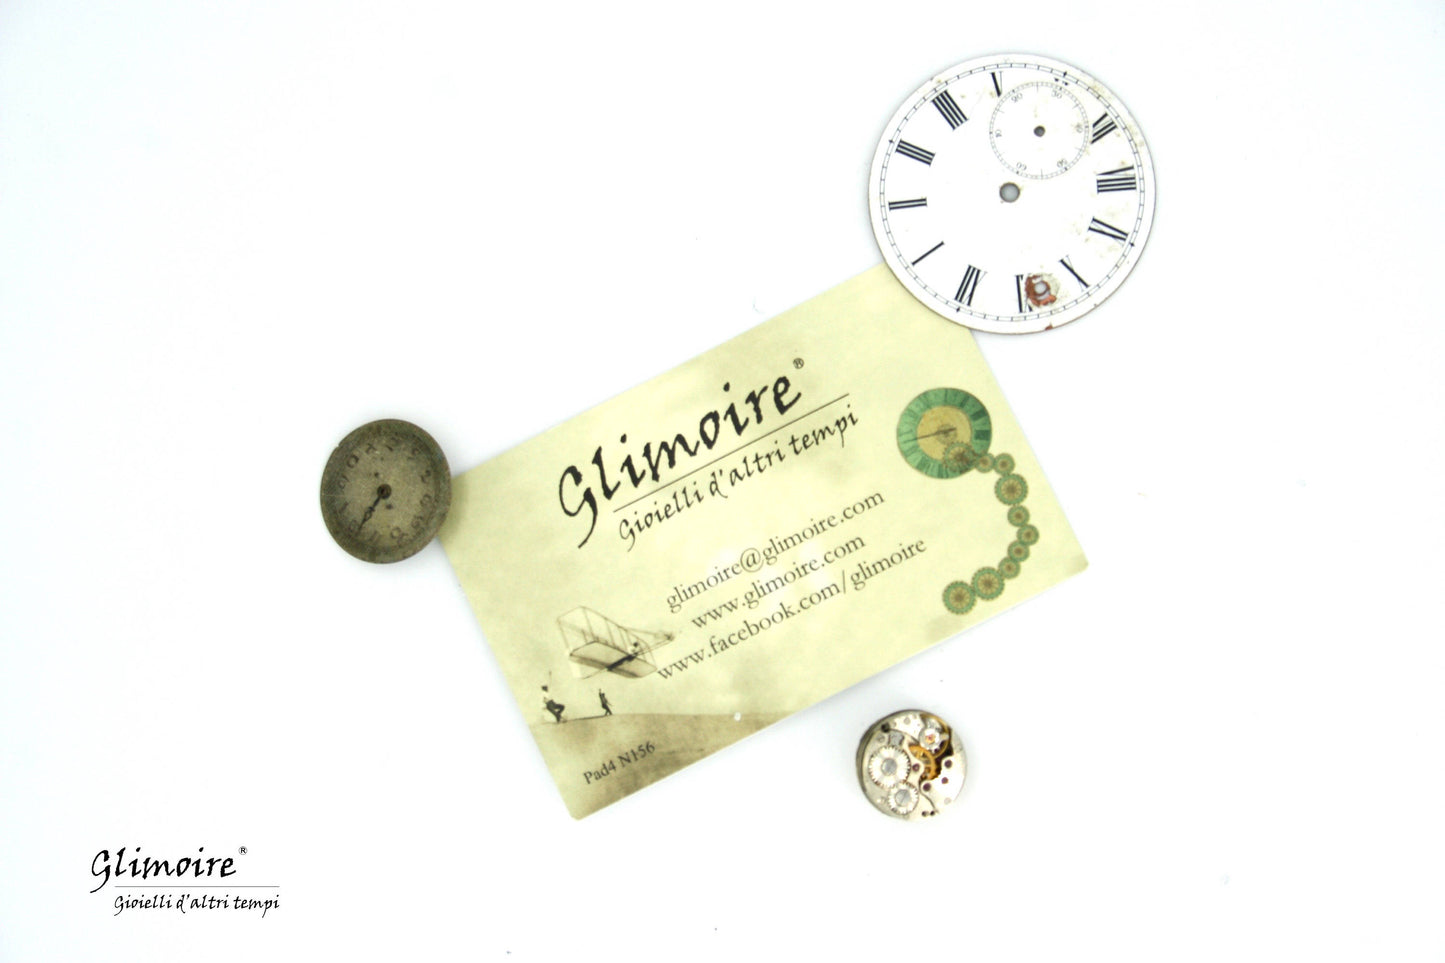 Collana con movimento vintage di orologio da taschino - ciondolo con meccanismo di orologio anni '30 art.285 - Glimoire